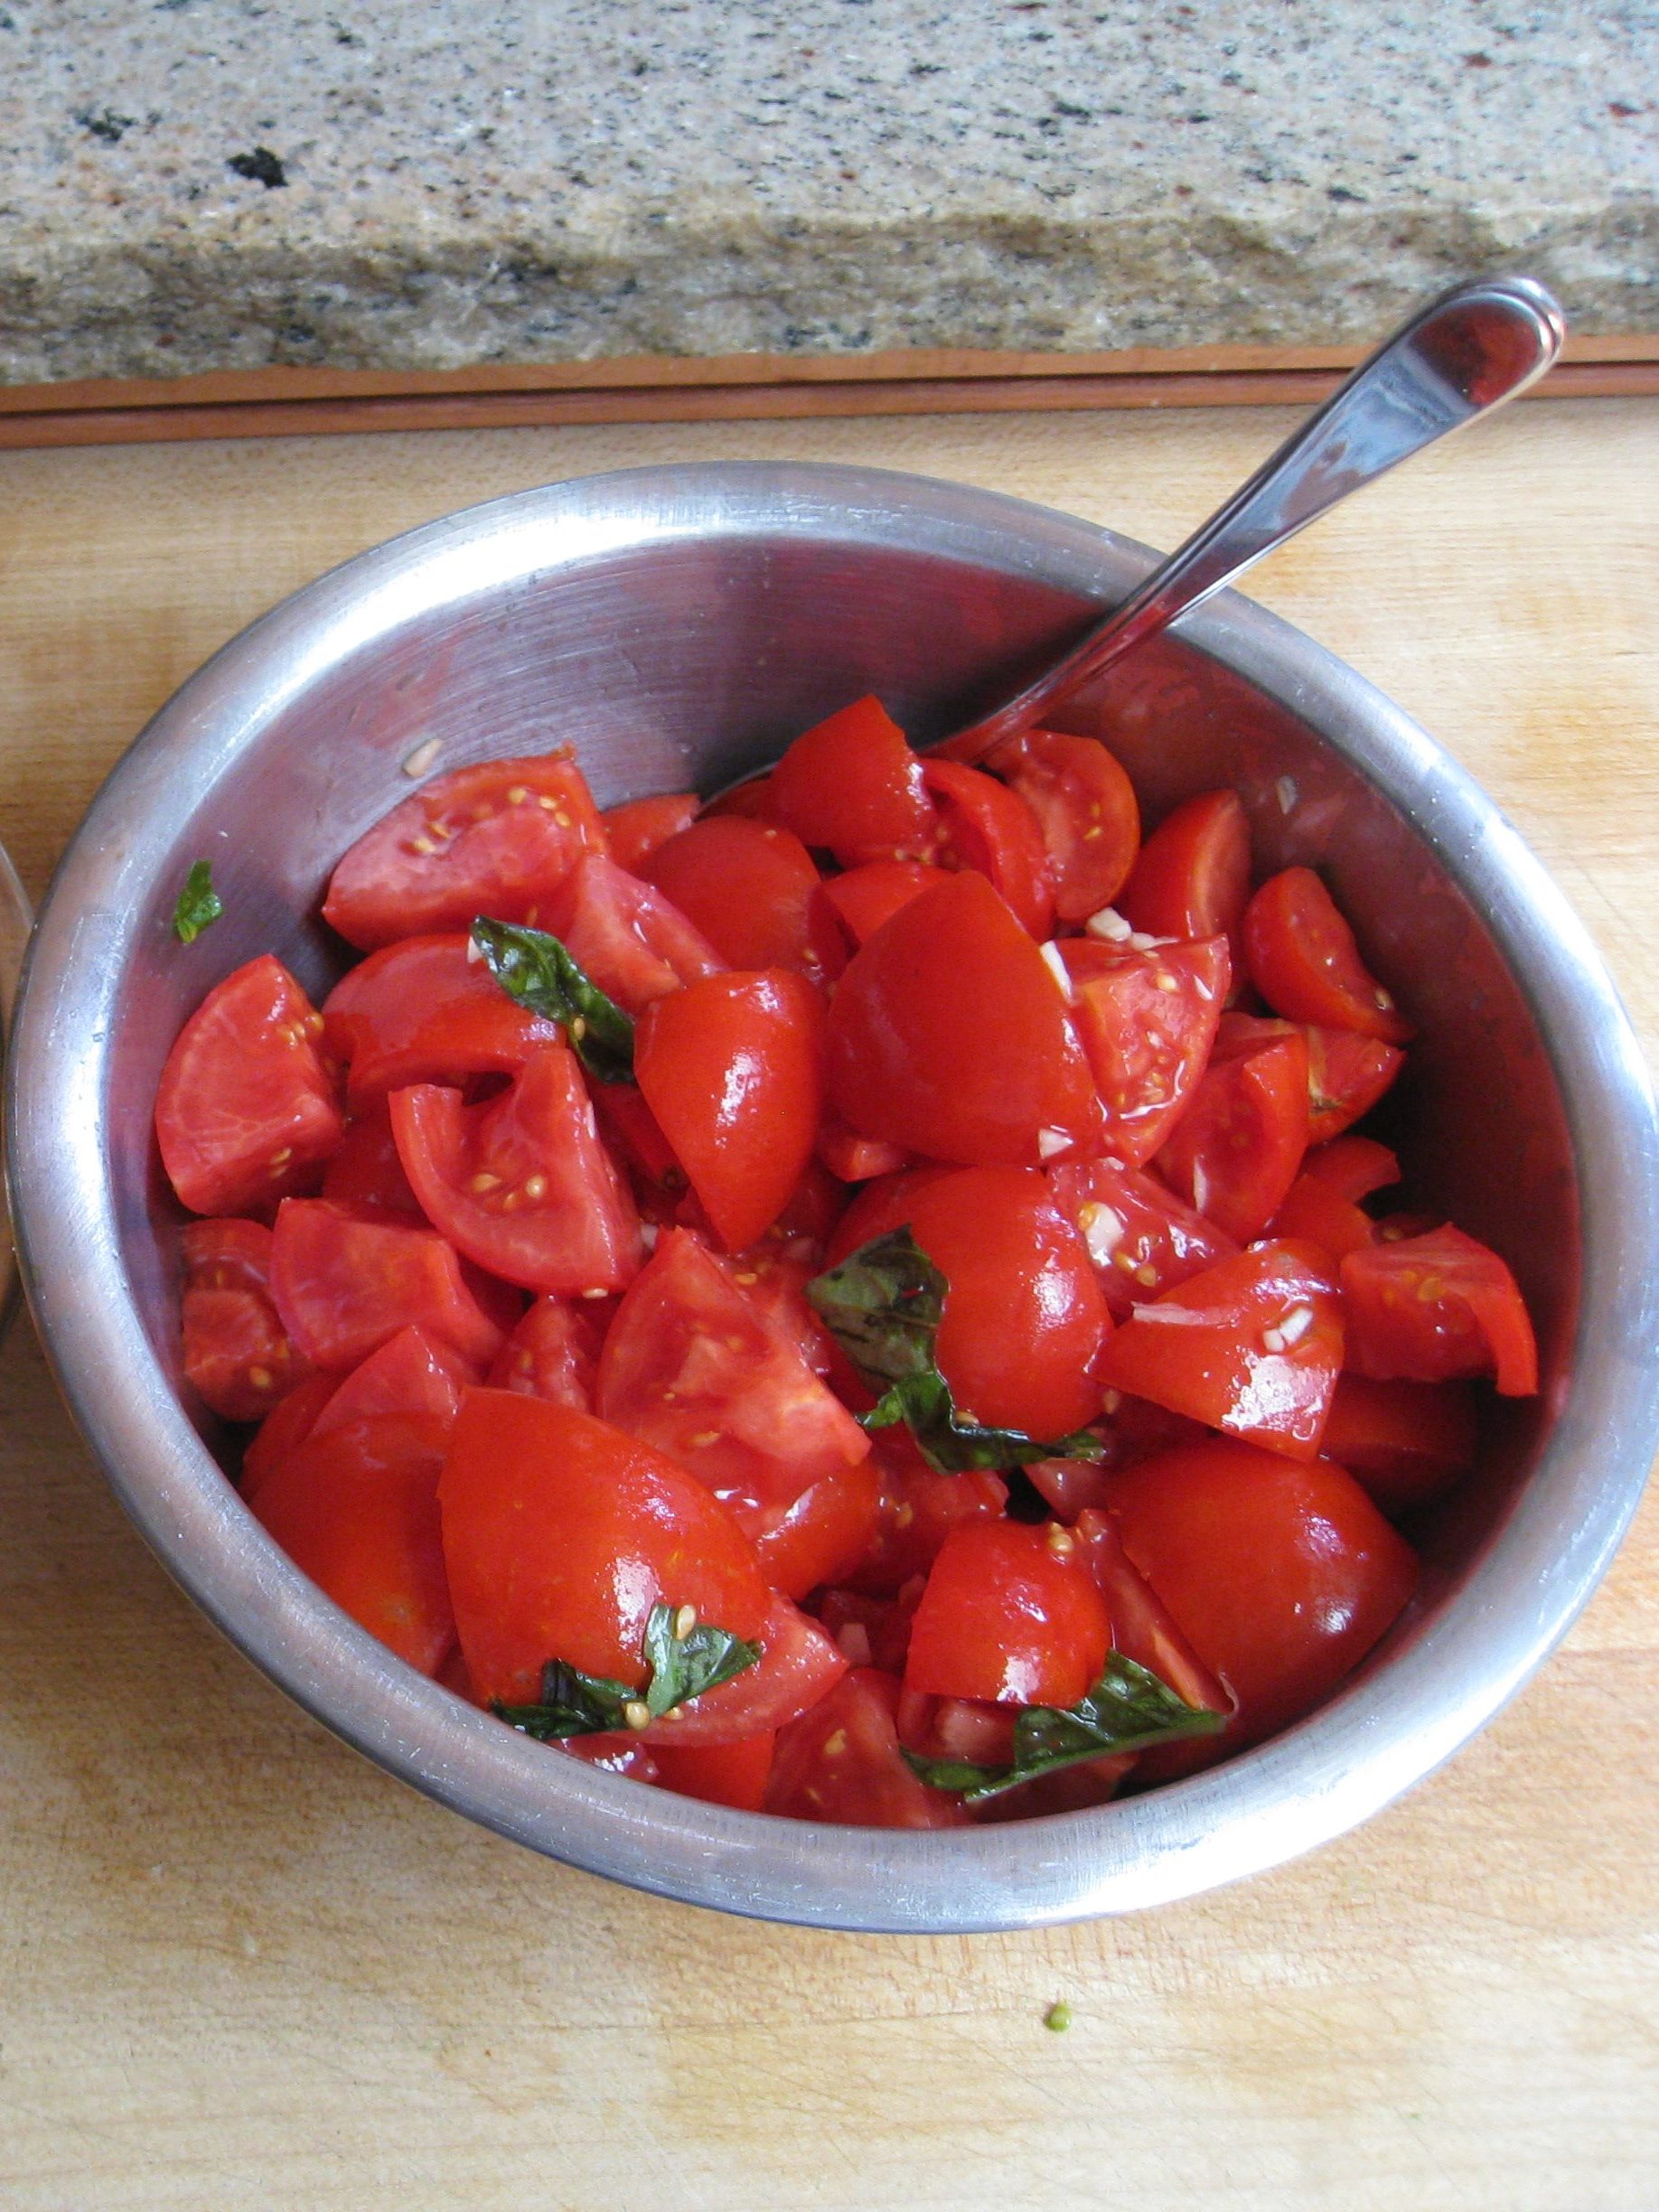 Tomato basil mix